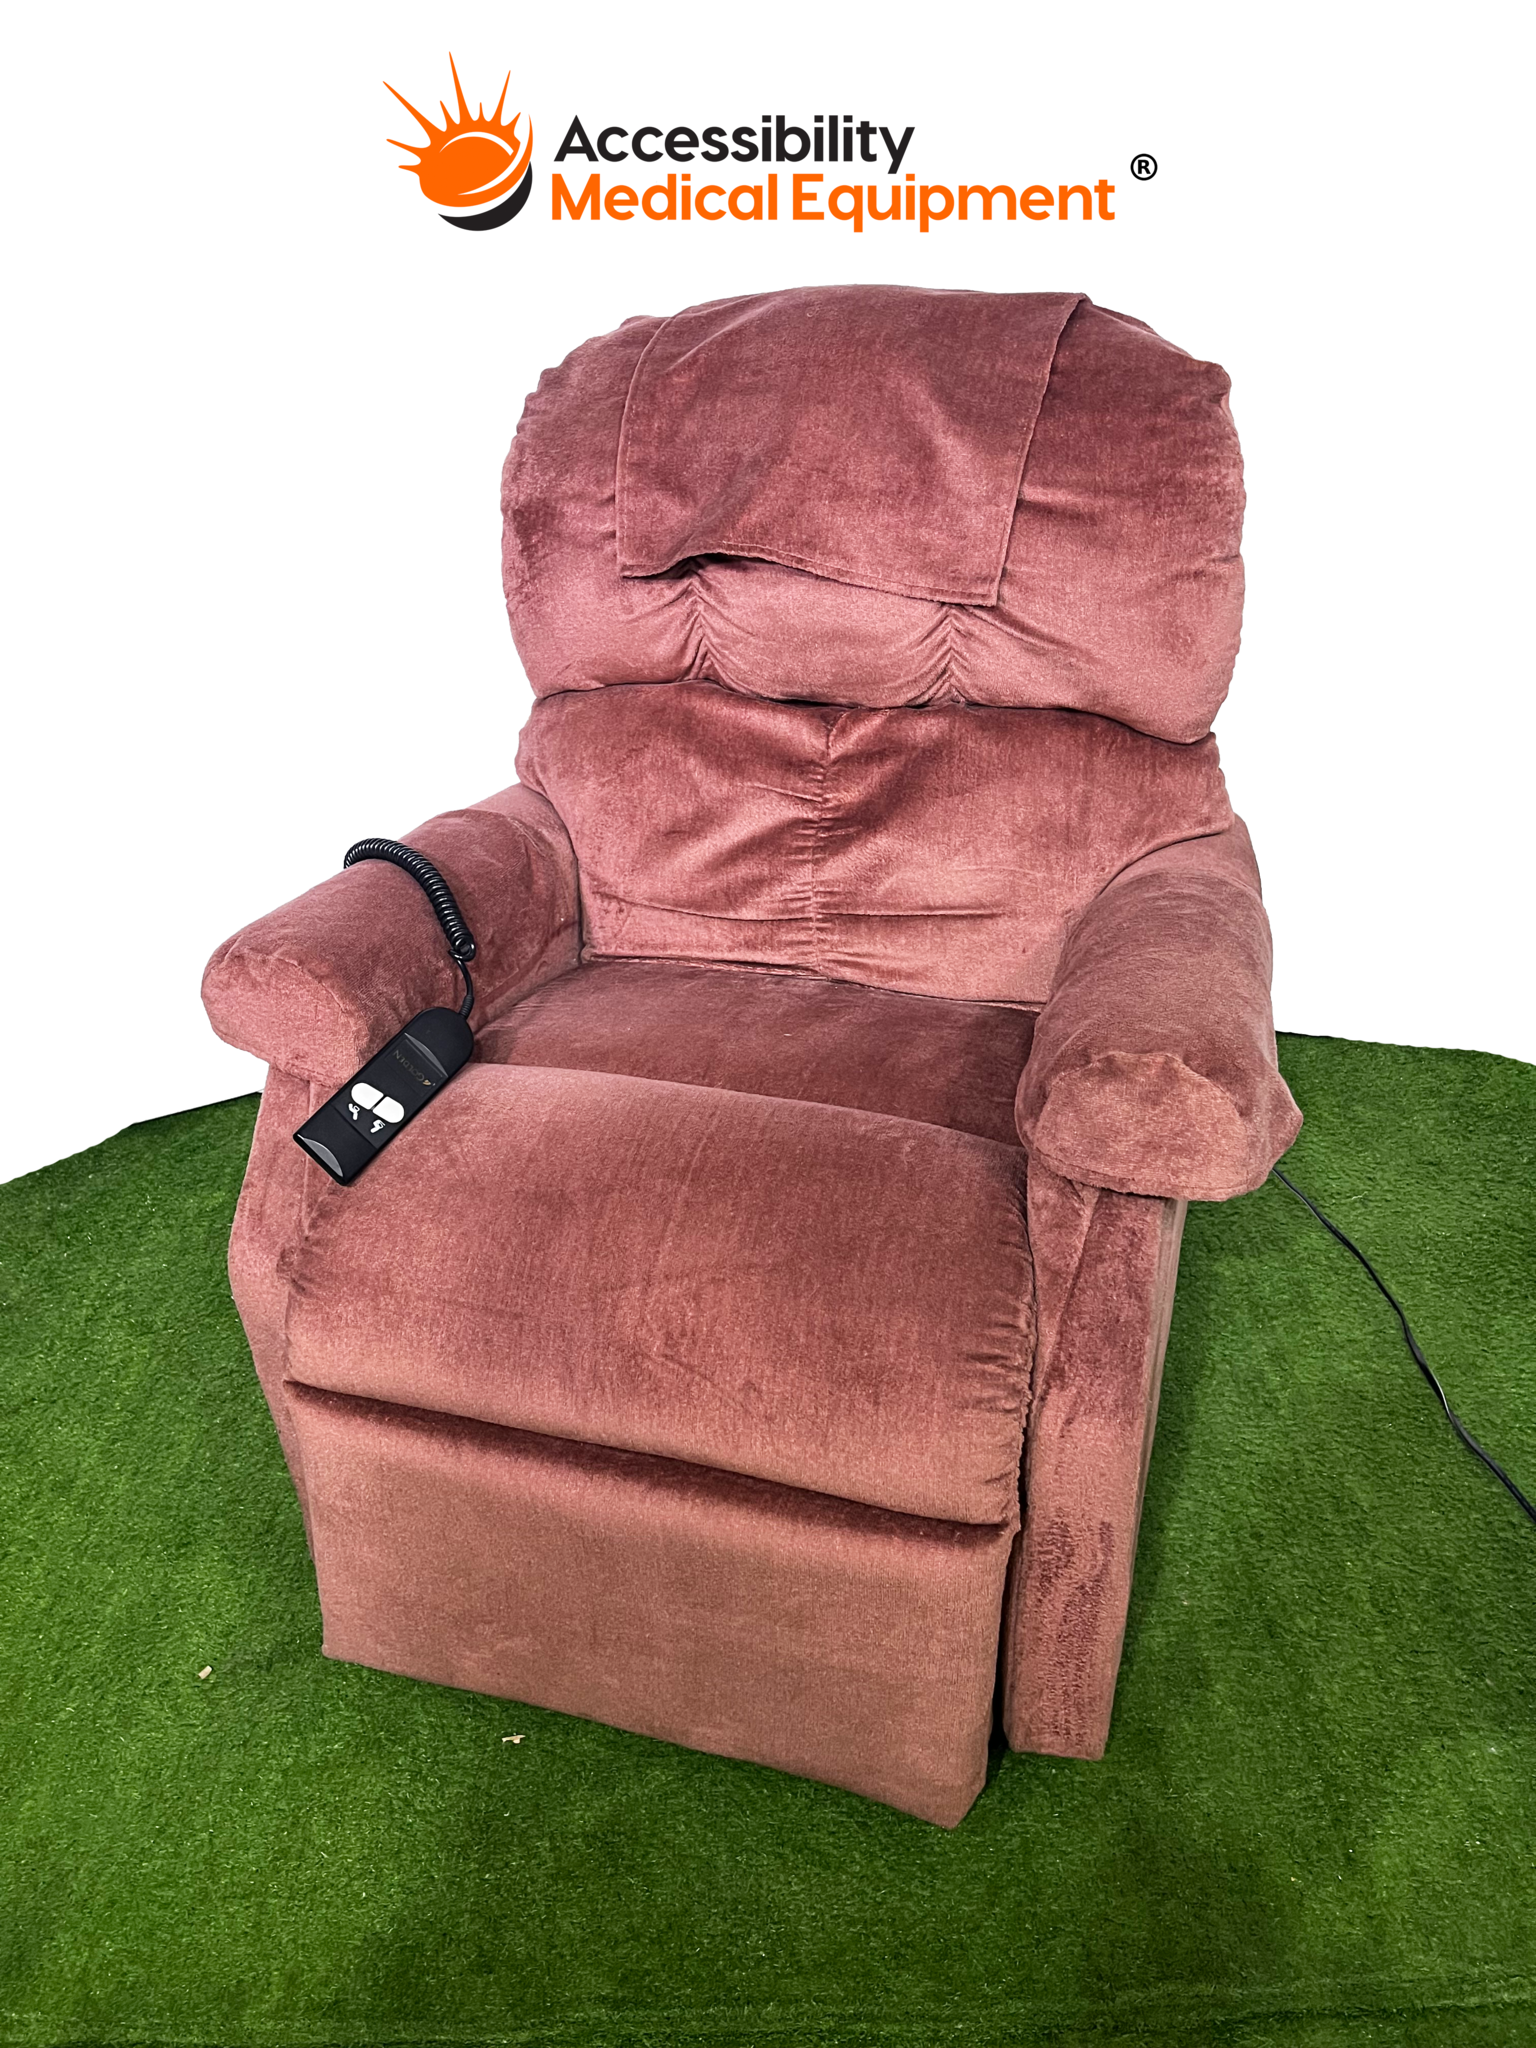 https://cdn.shoplightspeed.com/shops/620489/files/55822659/refurbished-golden-lift-chair-recliner-with-massag.jpg